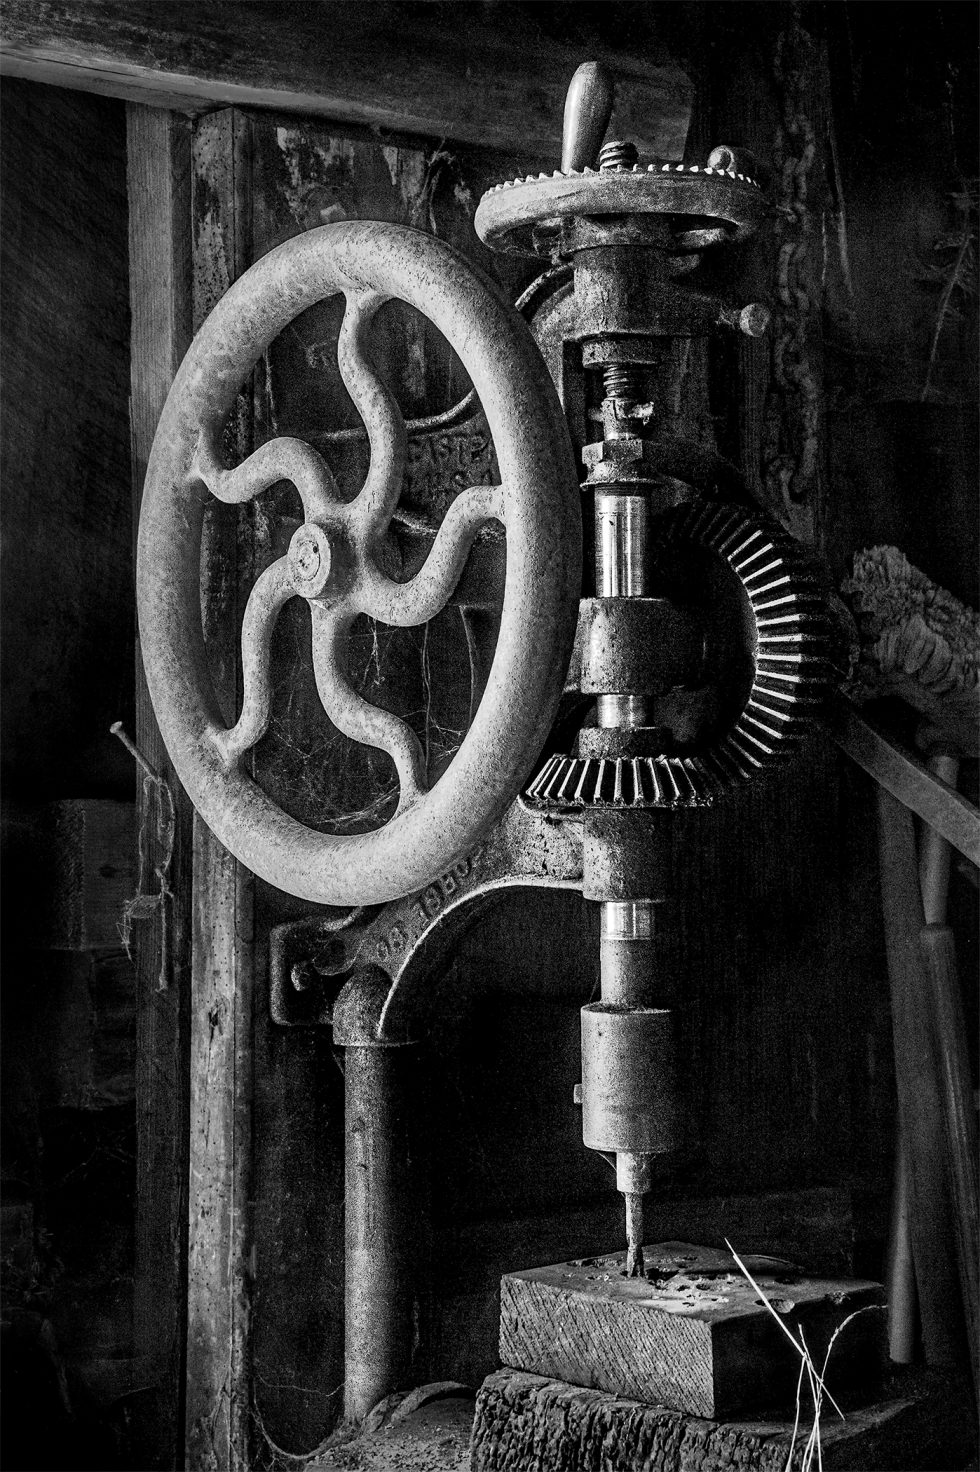 Drill press at Sturgeon’s Mill